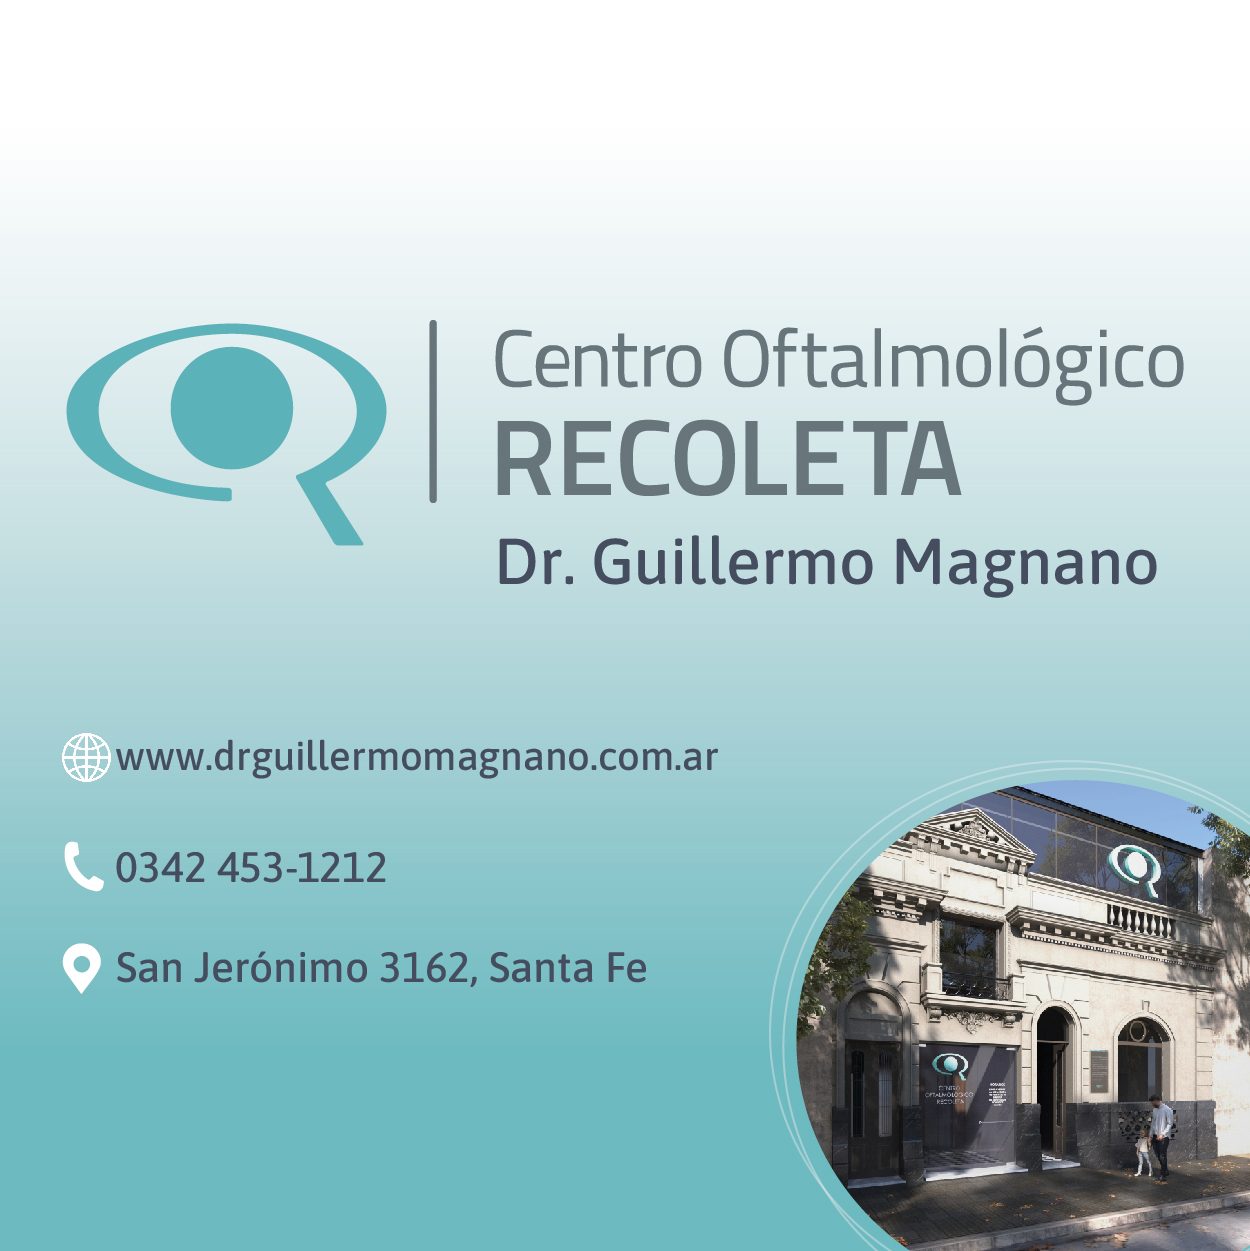 Centro Oftalmológico Recoleta